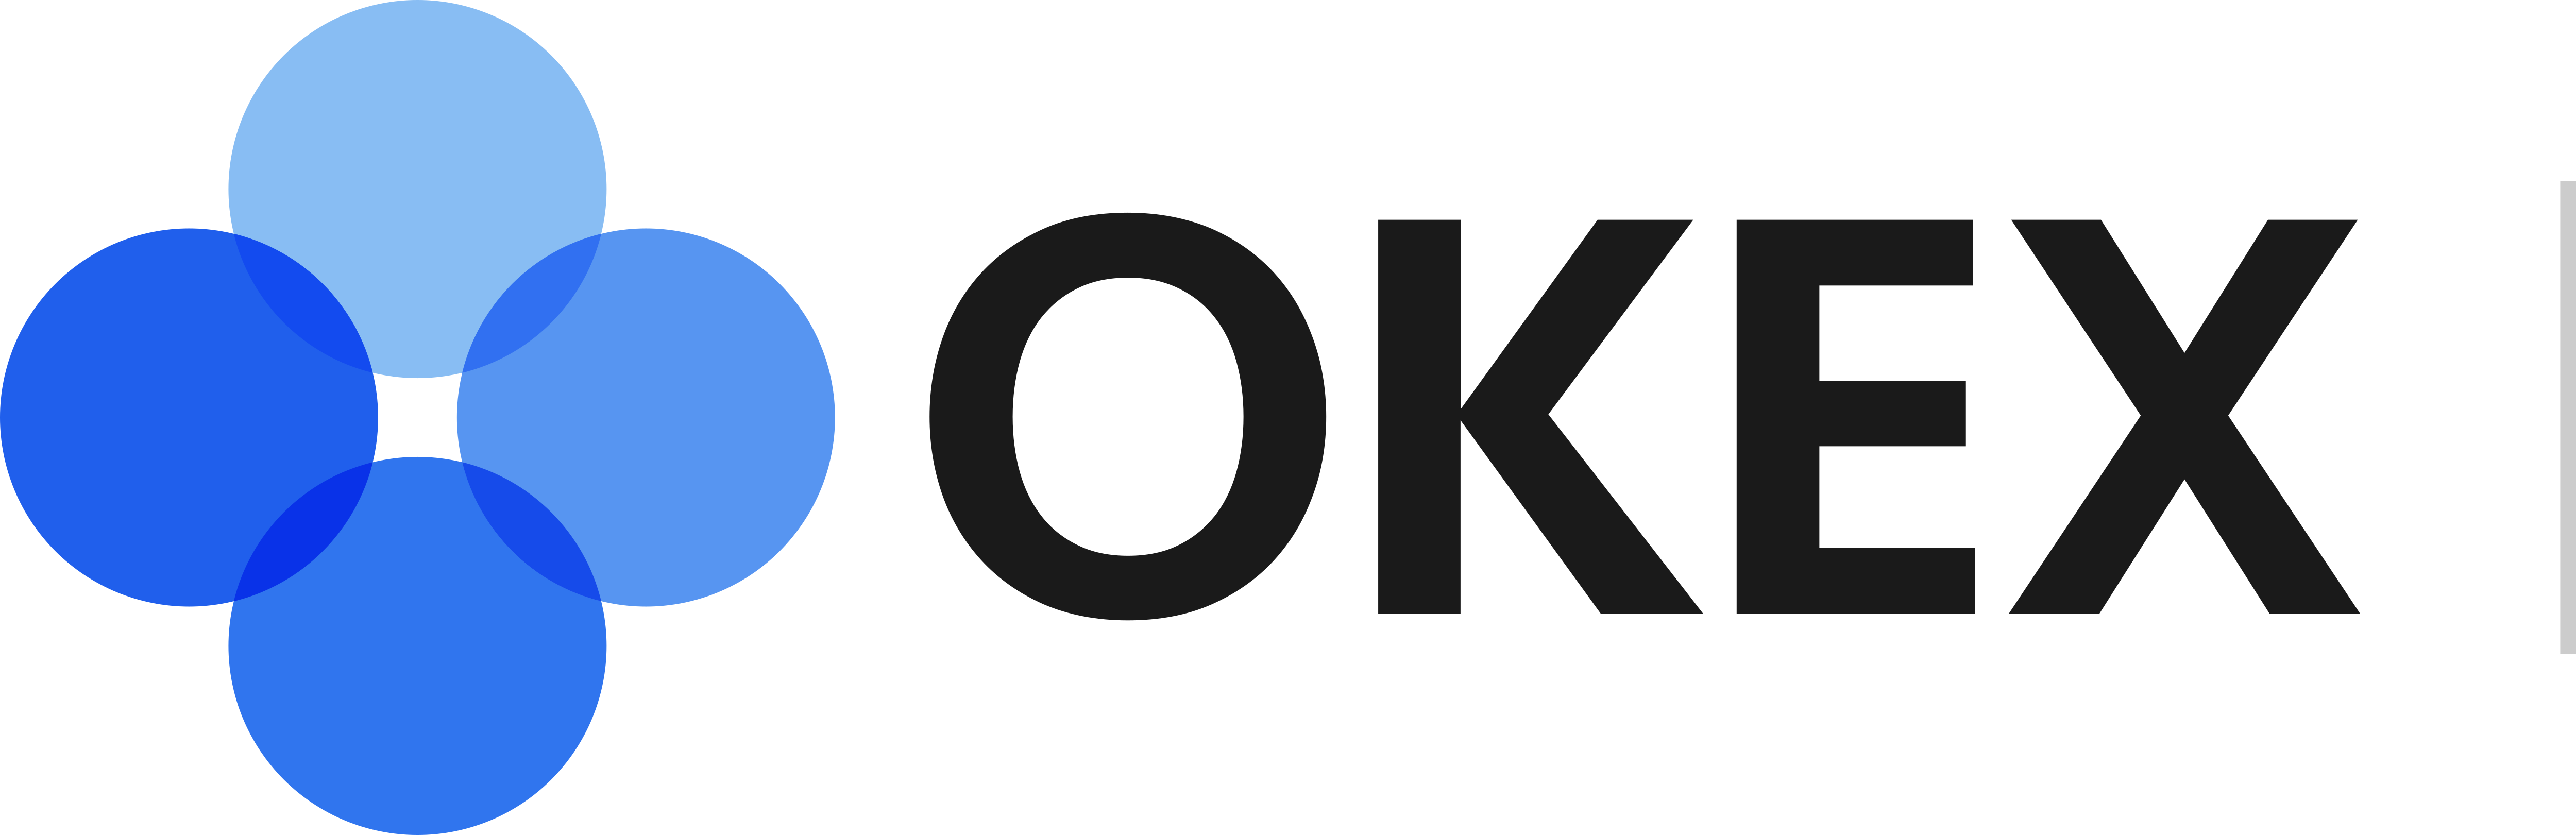 OKEx – Logos Download